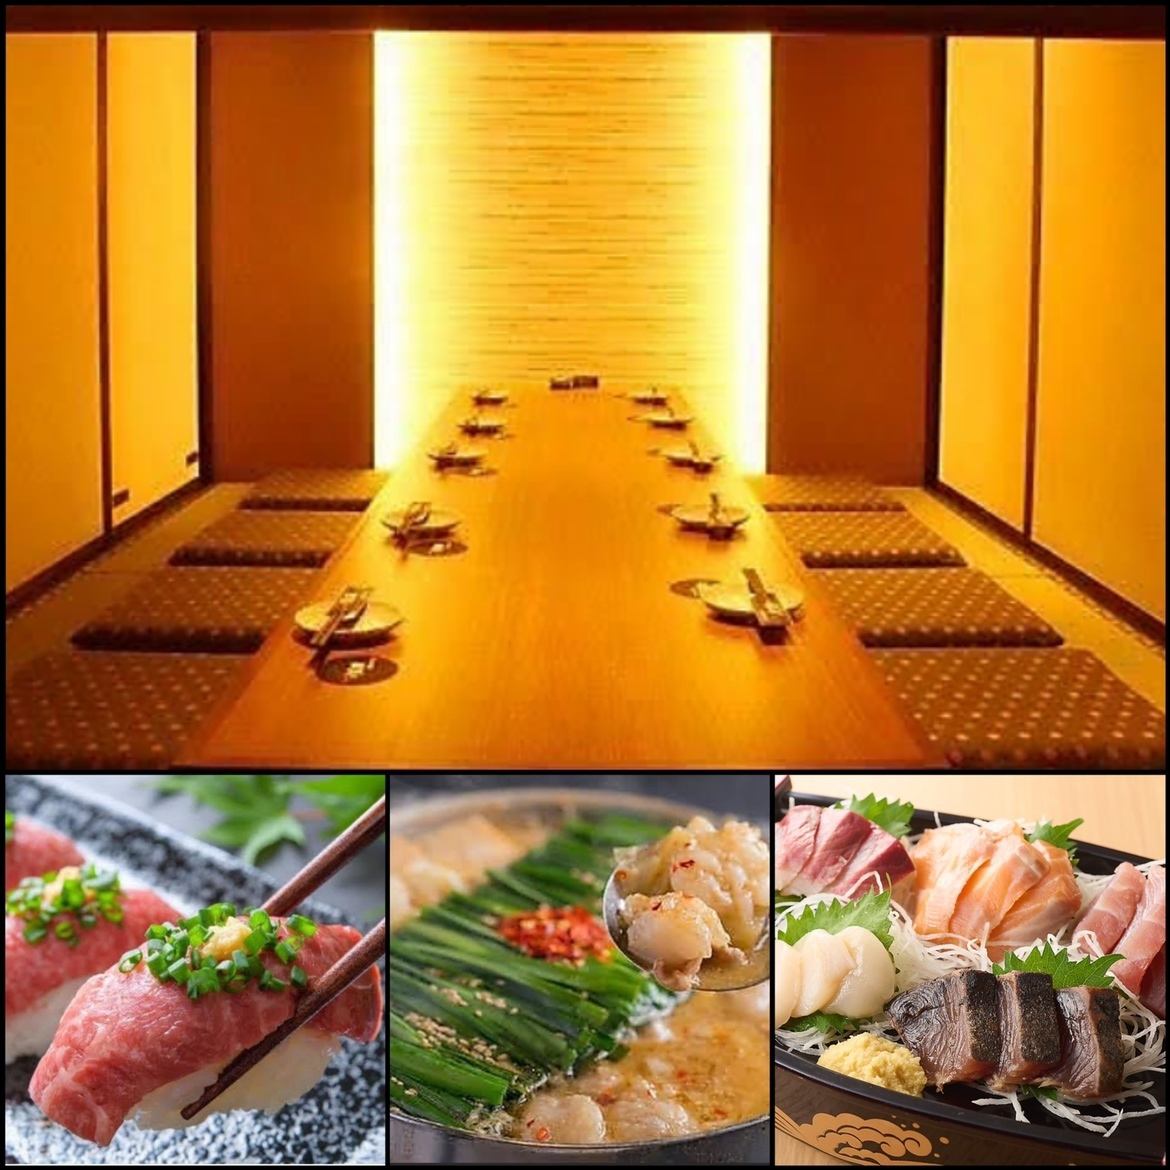 在完全私密的日式圍爐餐桌上享用精緻的肉類和魚類菜餚♪